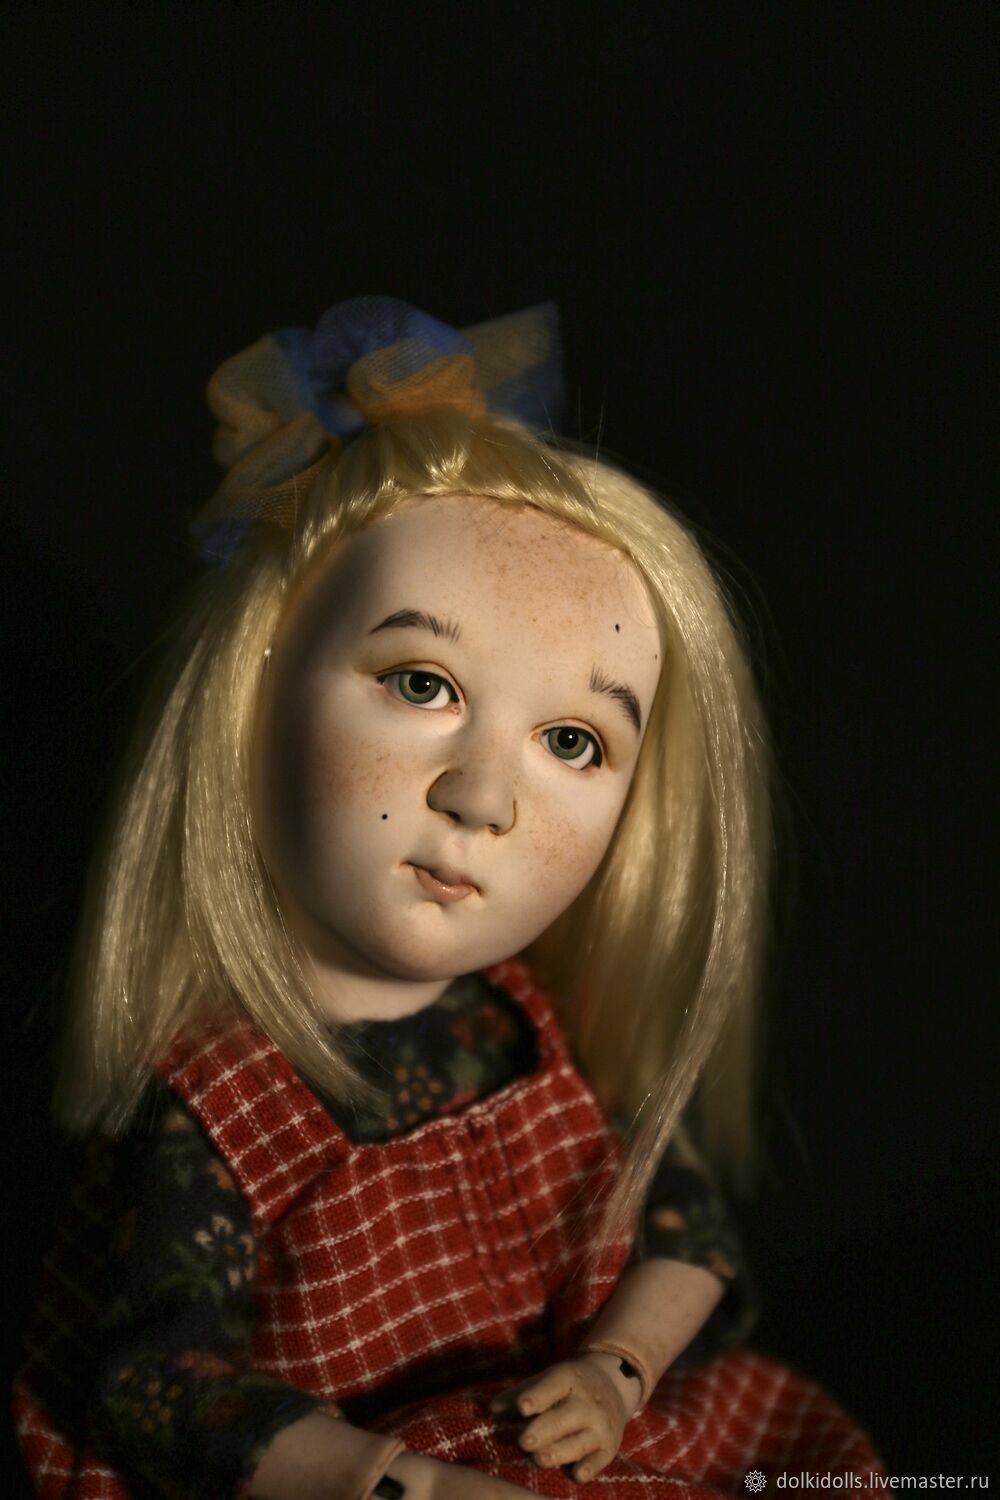  фарфоровая кукла ручной работы Наташа, Шарнирная кукла, Дзержинский,  Фото №1